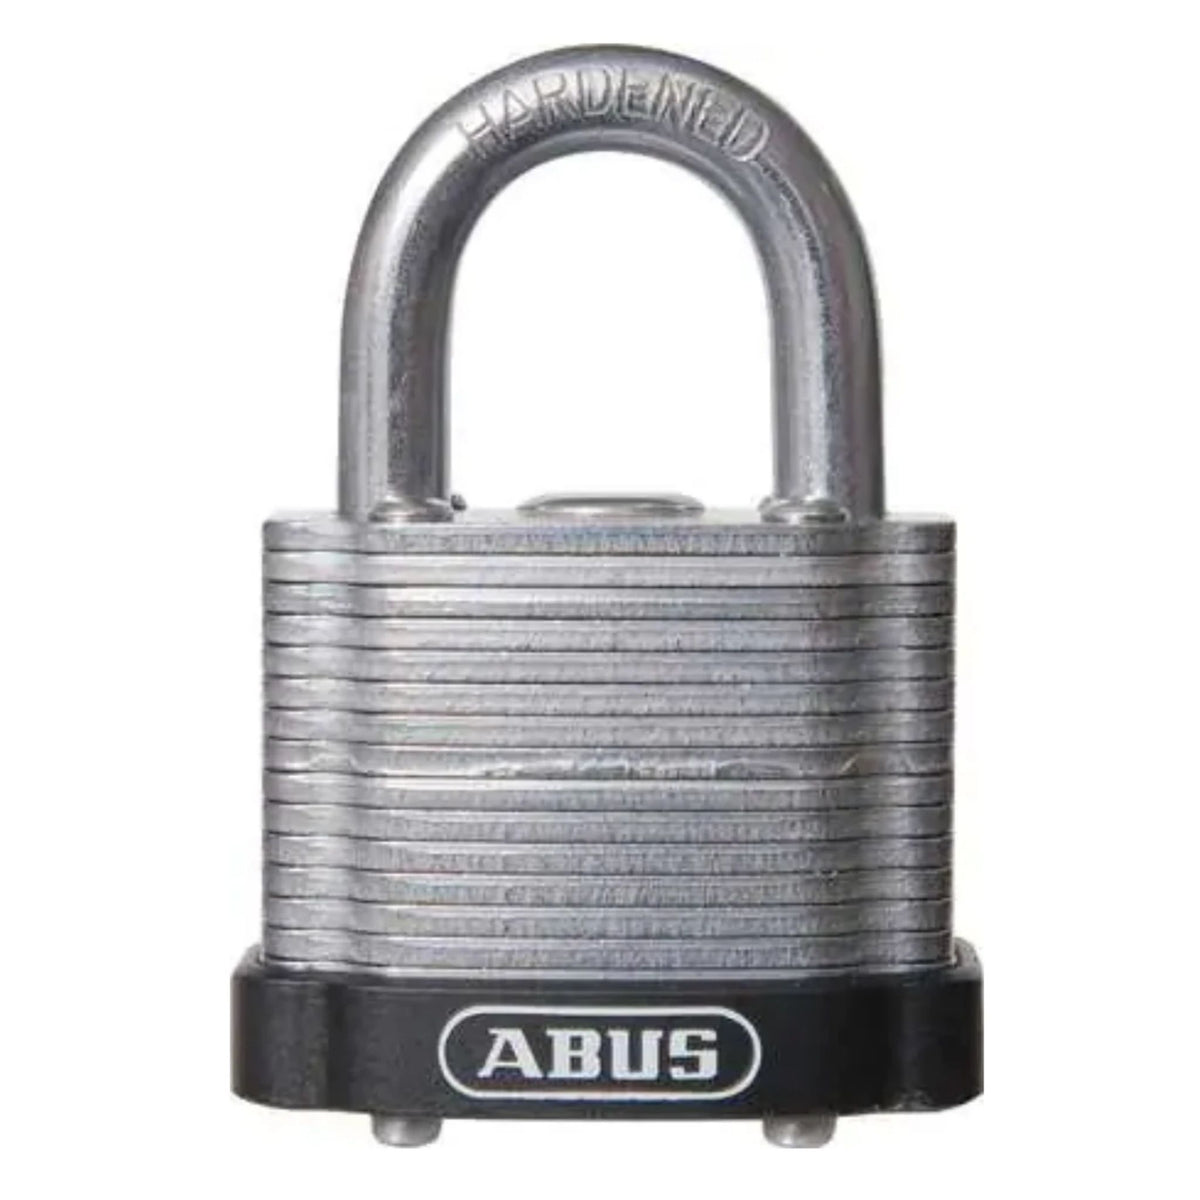 Abus 41/40 Black Lock Laminated Steel Padlocks Keyed Alike (4140 KA), KD or MK Locks - The Lock Source